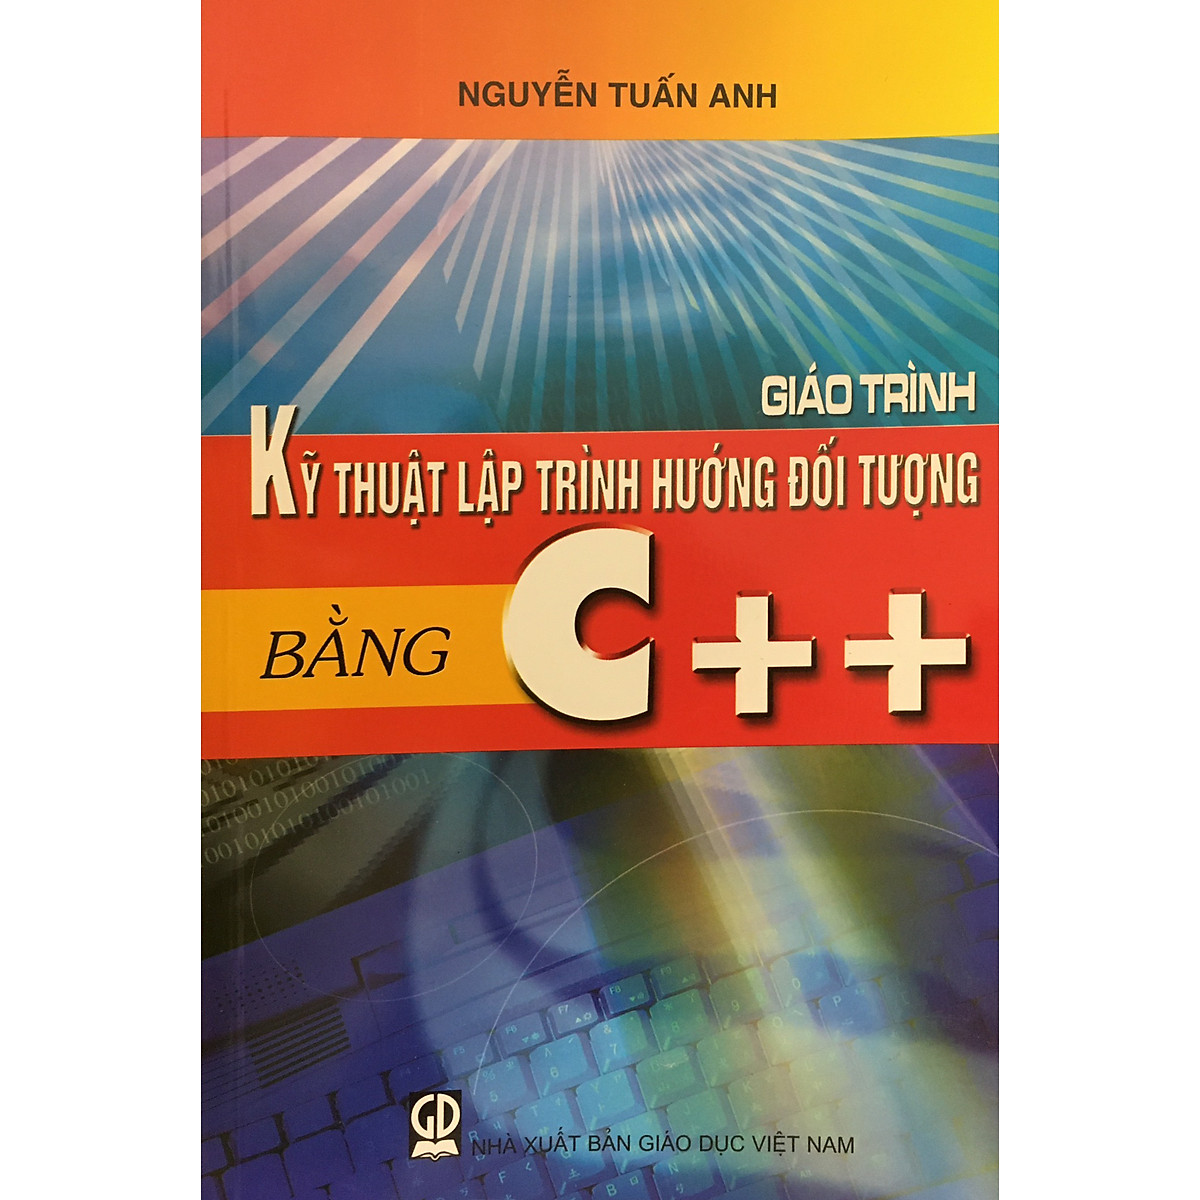 Giáo trình kỹ thuật lập trình hướng đối tượng bằng C++